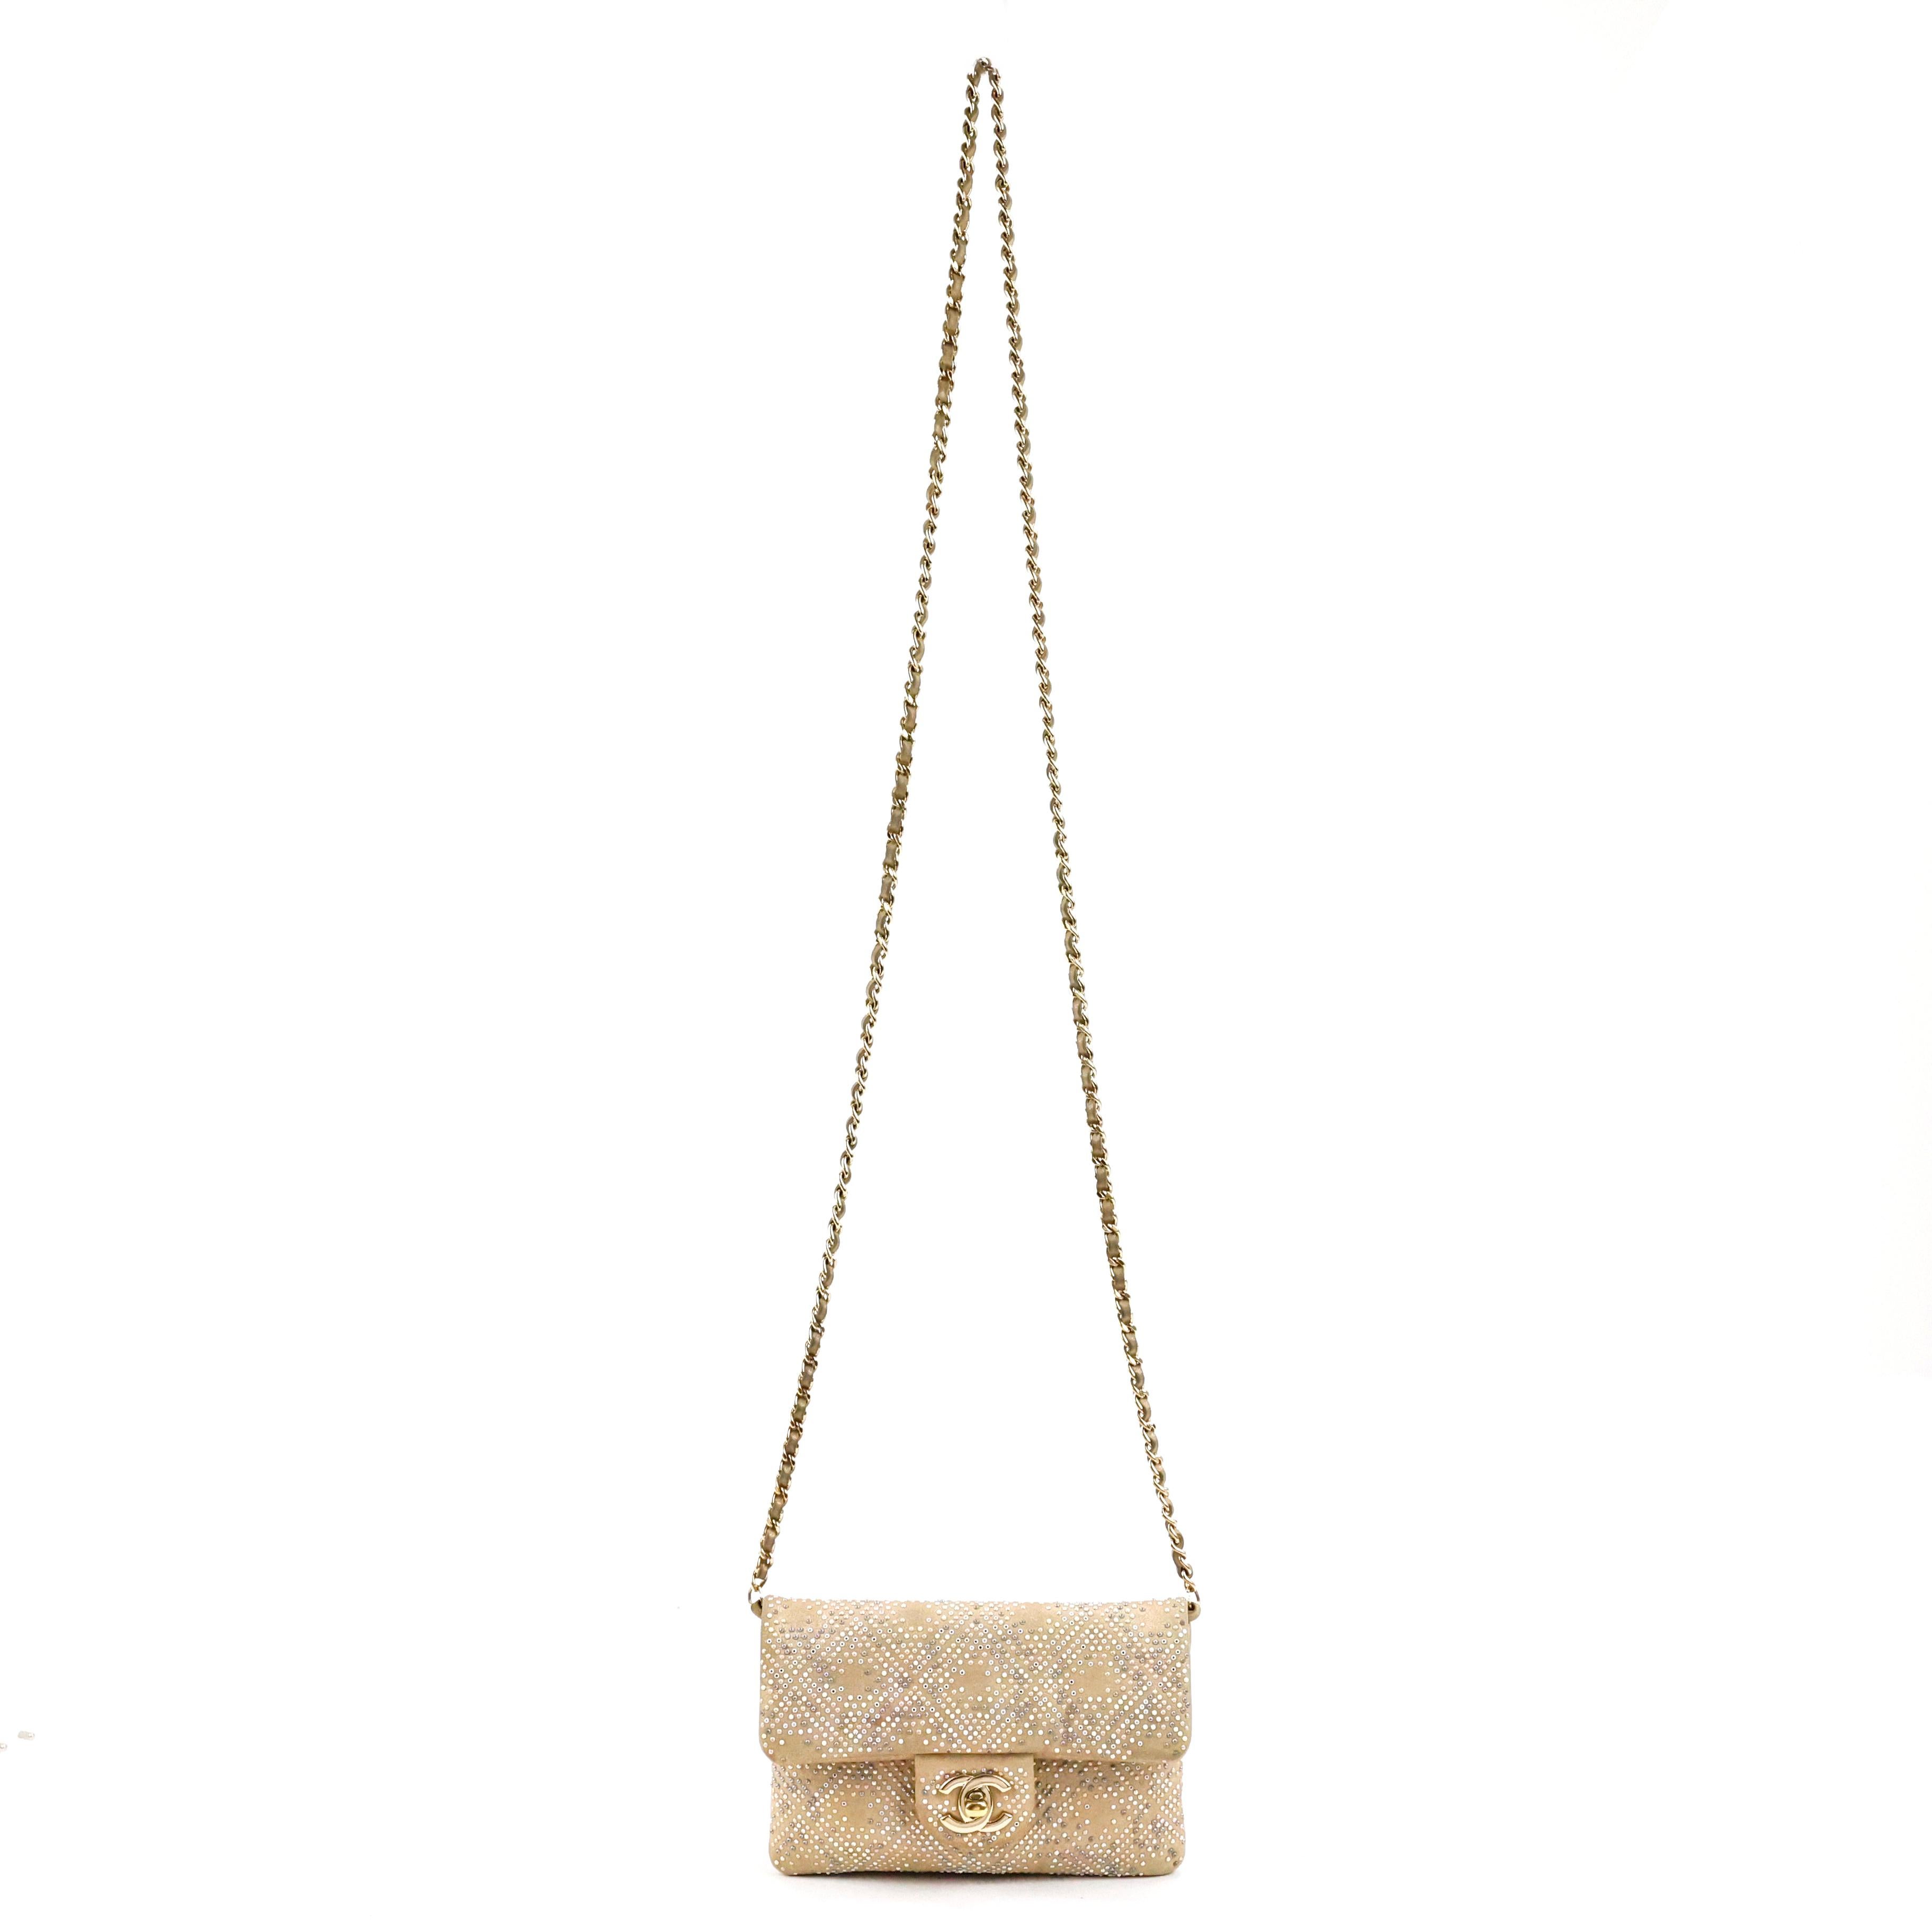 Rare mini sac à rabat embelli de Chanel, en cuir couleur or, entièrement perlé de micro perles, pierres et miroirs, quincaillerie dorée.

Condit :
Bonne pièce d'occasion avec des signes d'usure sur le cuir.

Emballage/accessoires :
Sac à